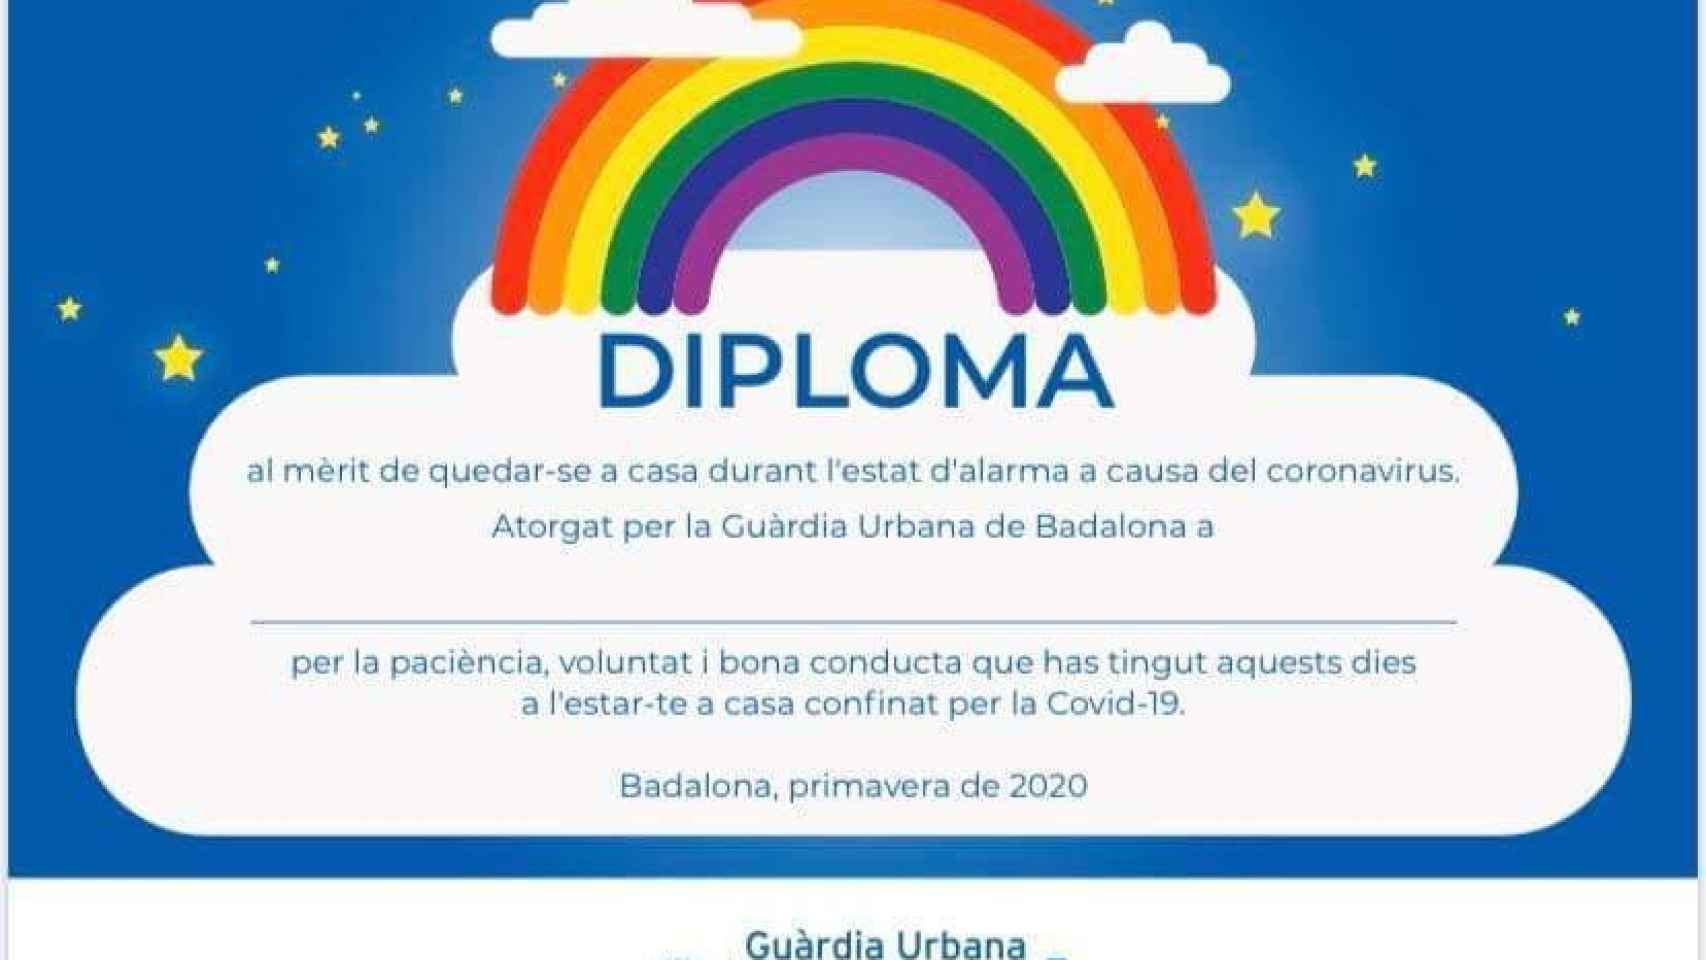 Diploma que entrega la policía de Badalona a los niños que respetan el confinamiento, no como su alcalde